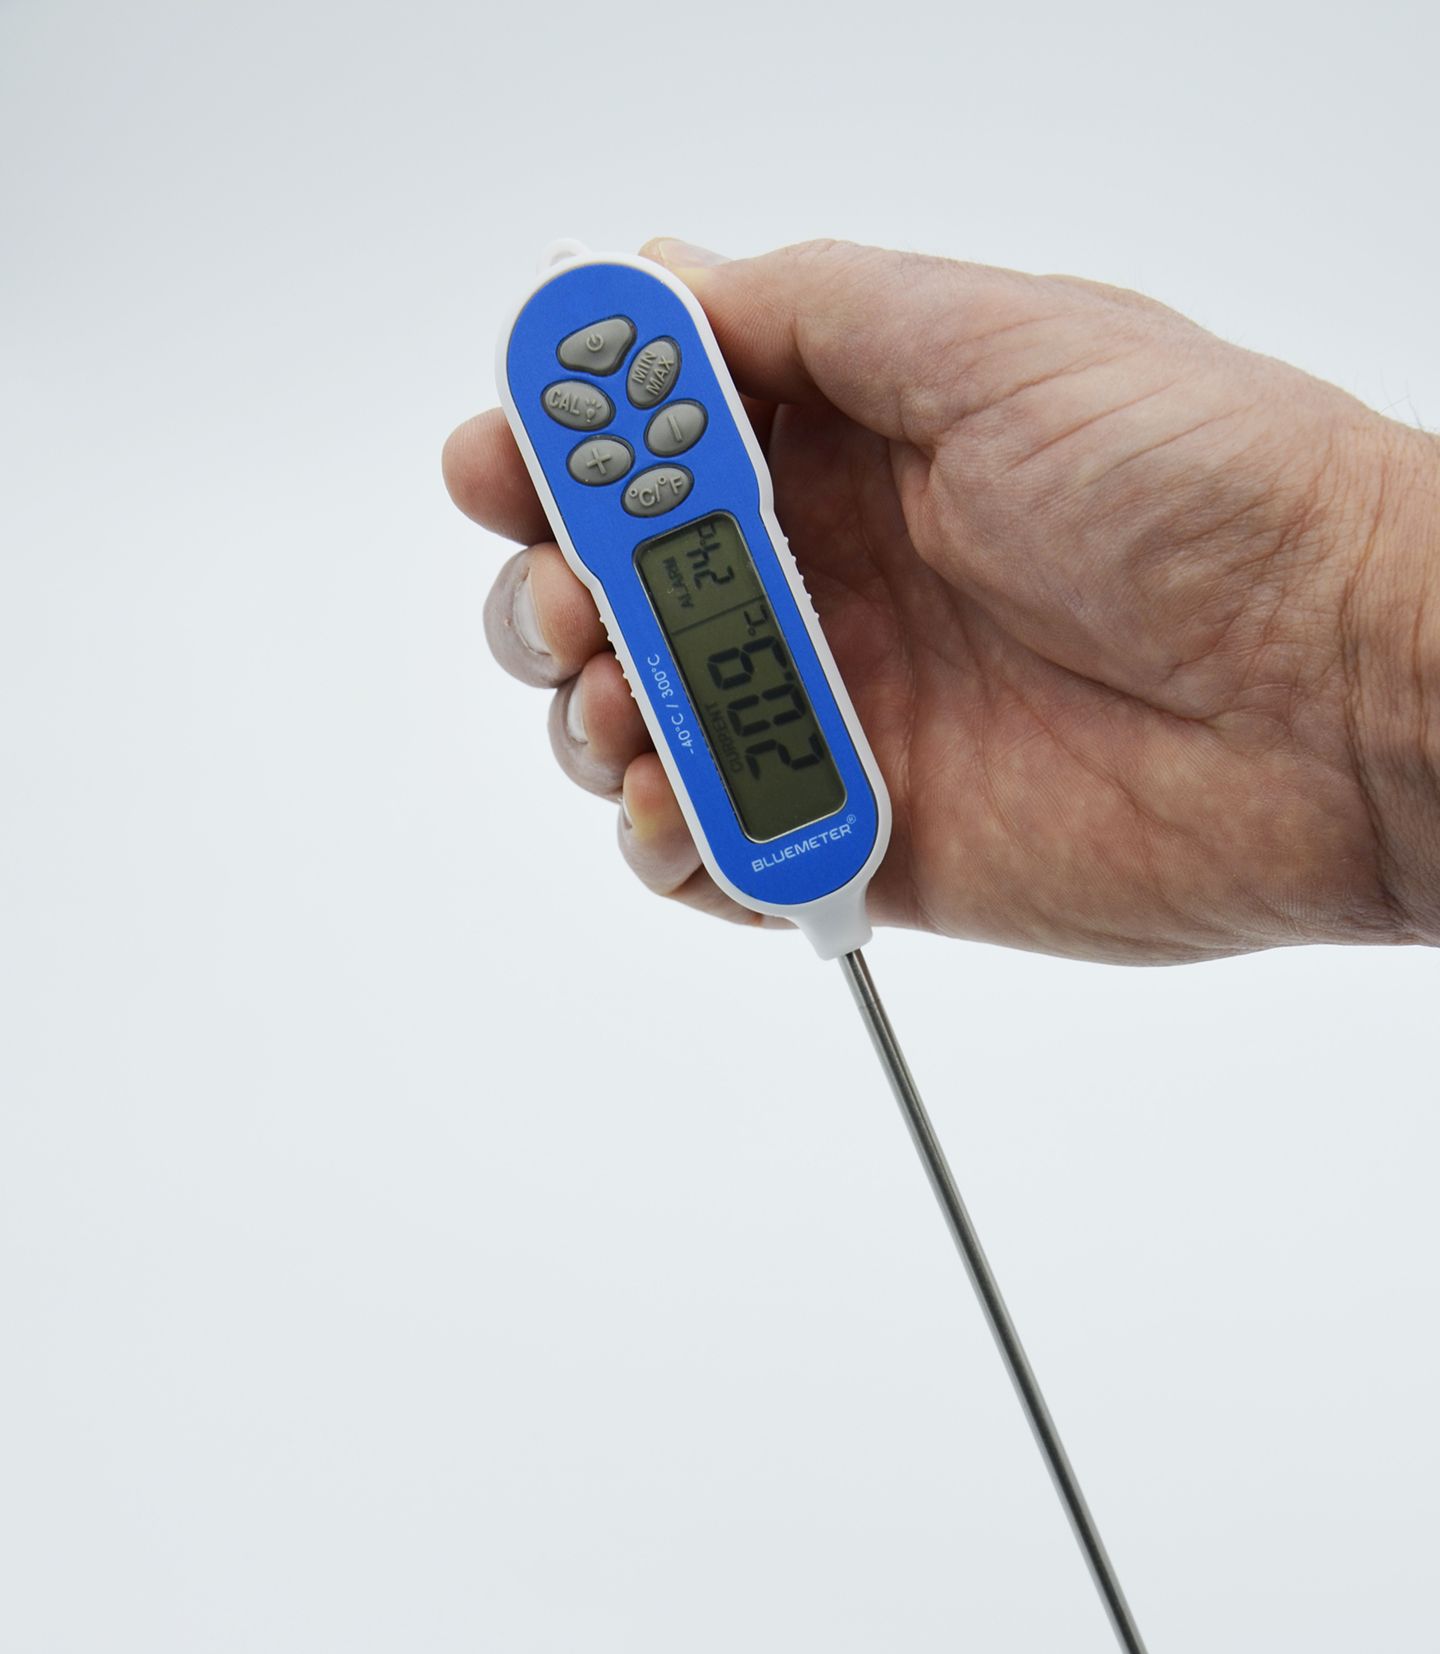 Thermomètre d'eau chaude image stock. Image du argent - 23843239